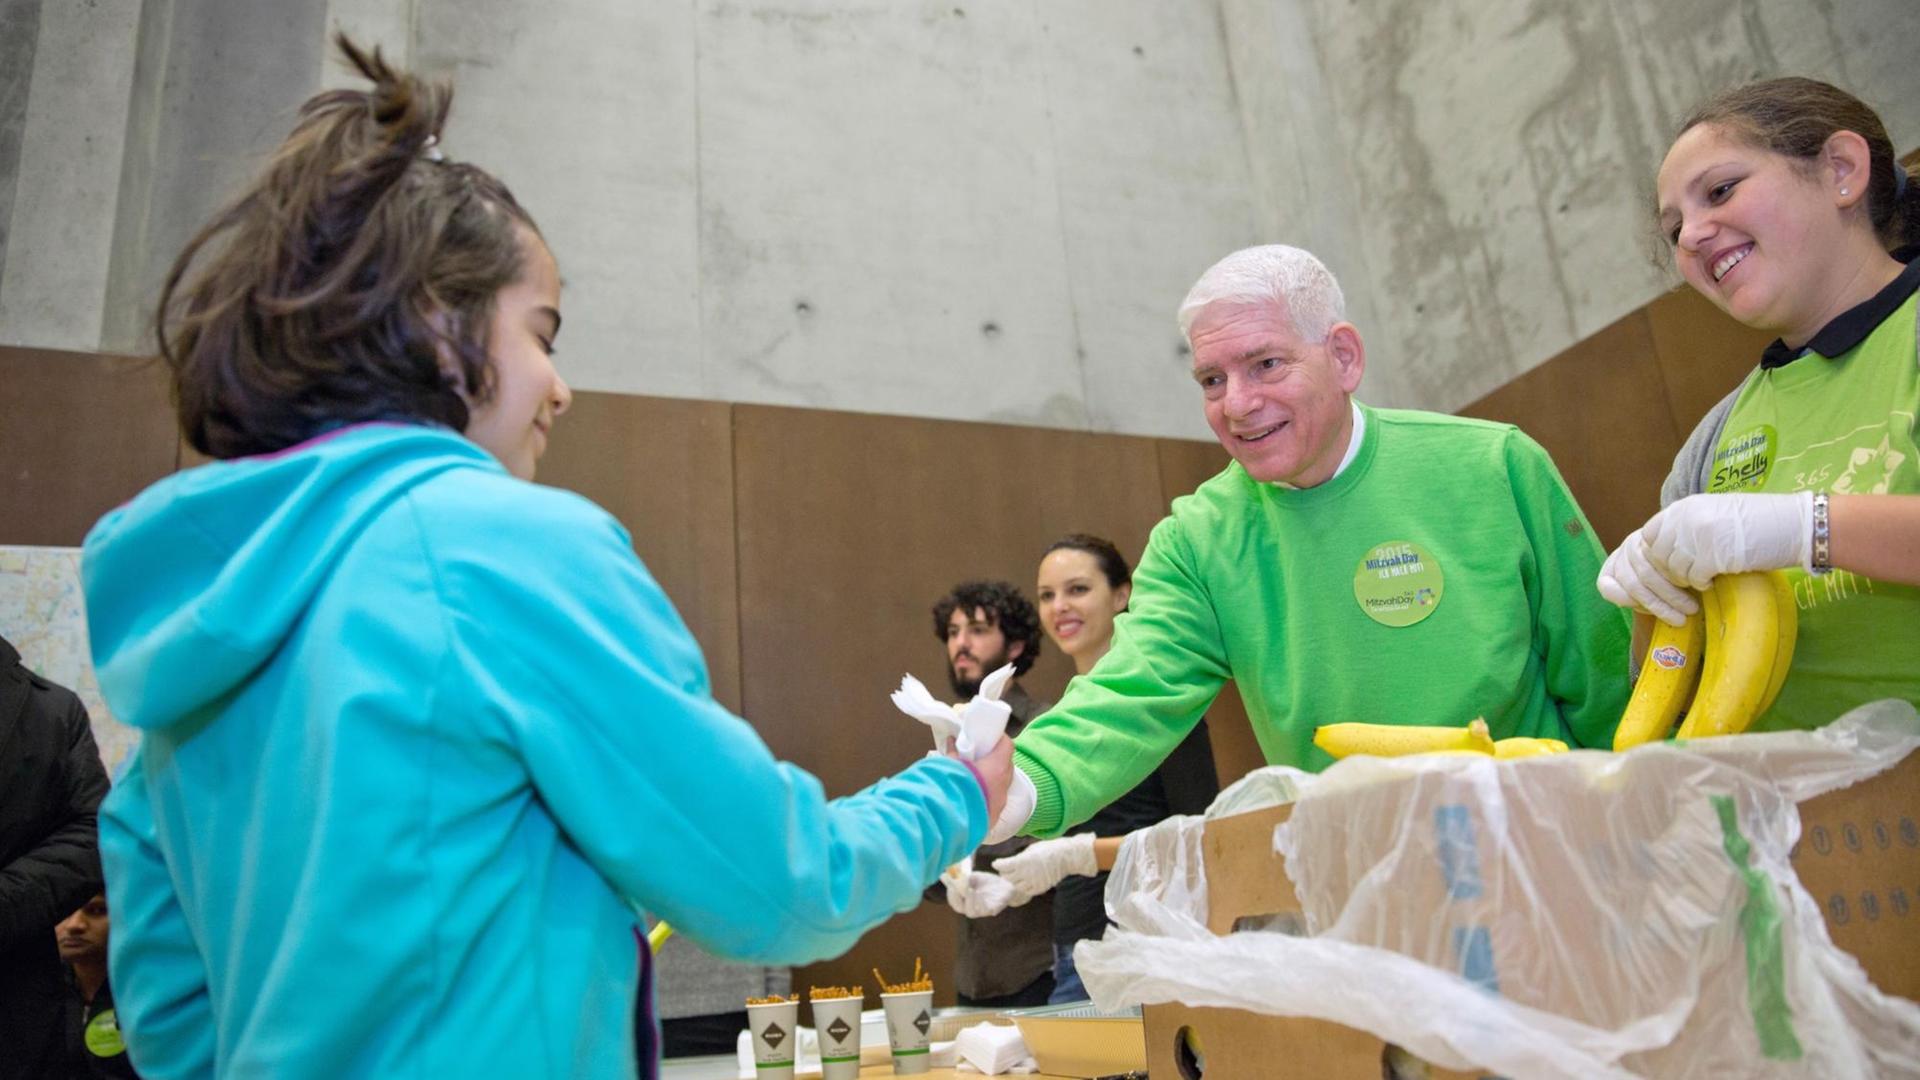 Josef Schuster, Präsident des Zentralrats der Juden, verteilt im Rahmen des Mitzvah Day am 15.11.2015 in einer Flüchtlingsunterkunft Essen an die Bewohner